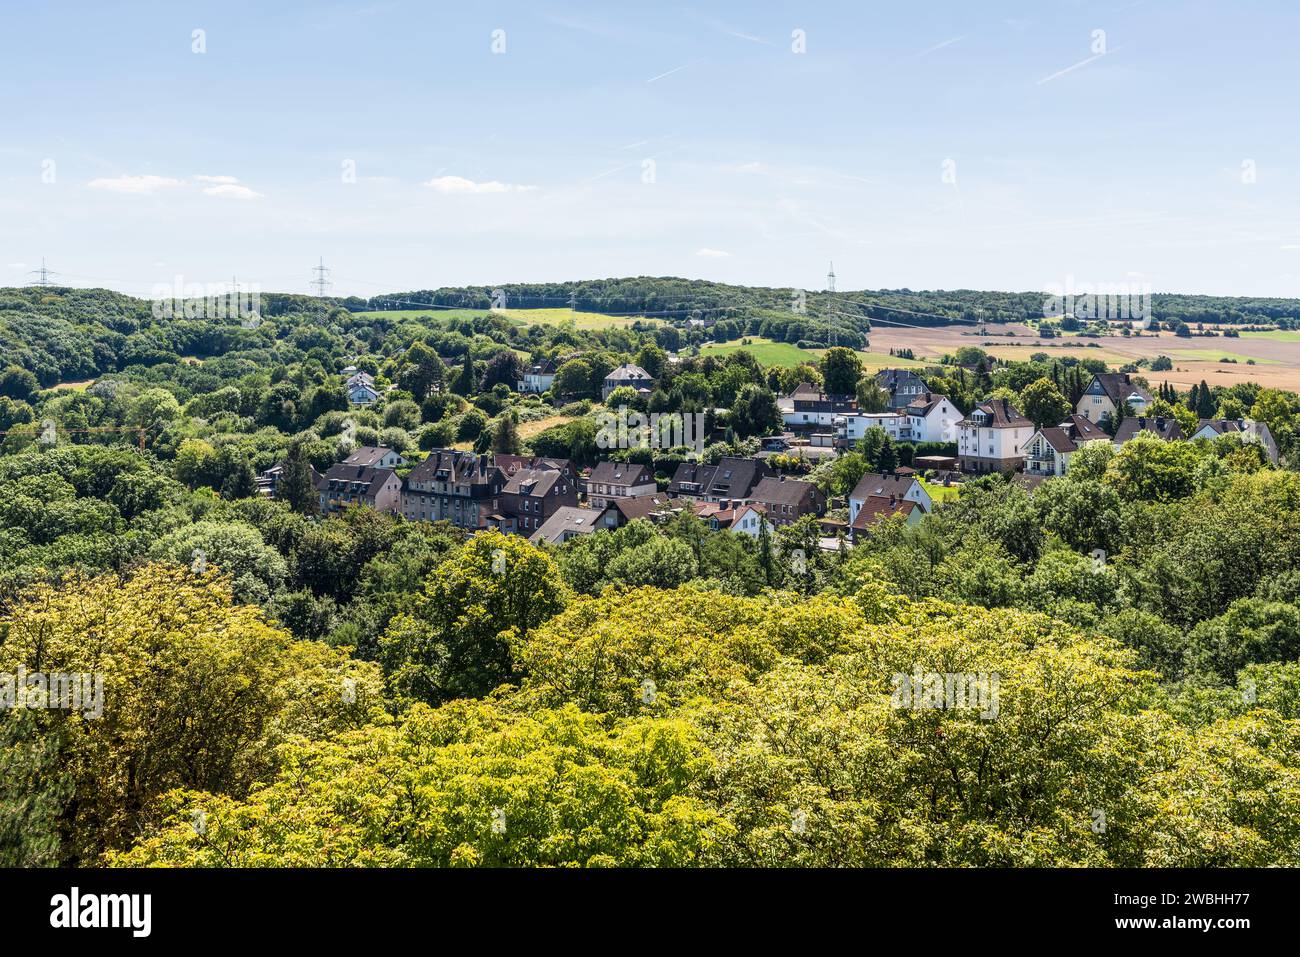 Atemberaubende Aussicht auf den Vorort Hattingen und die umliegende Grünfläche vom Schloss Blankenstein im Ruhrgebiet, Nordrhein-Westfalen, Deutschland Stockfoto